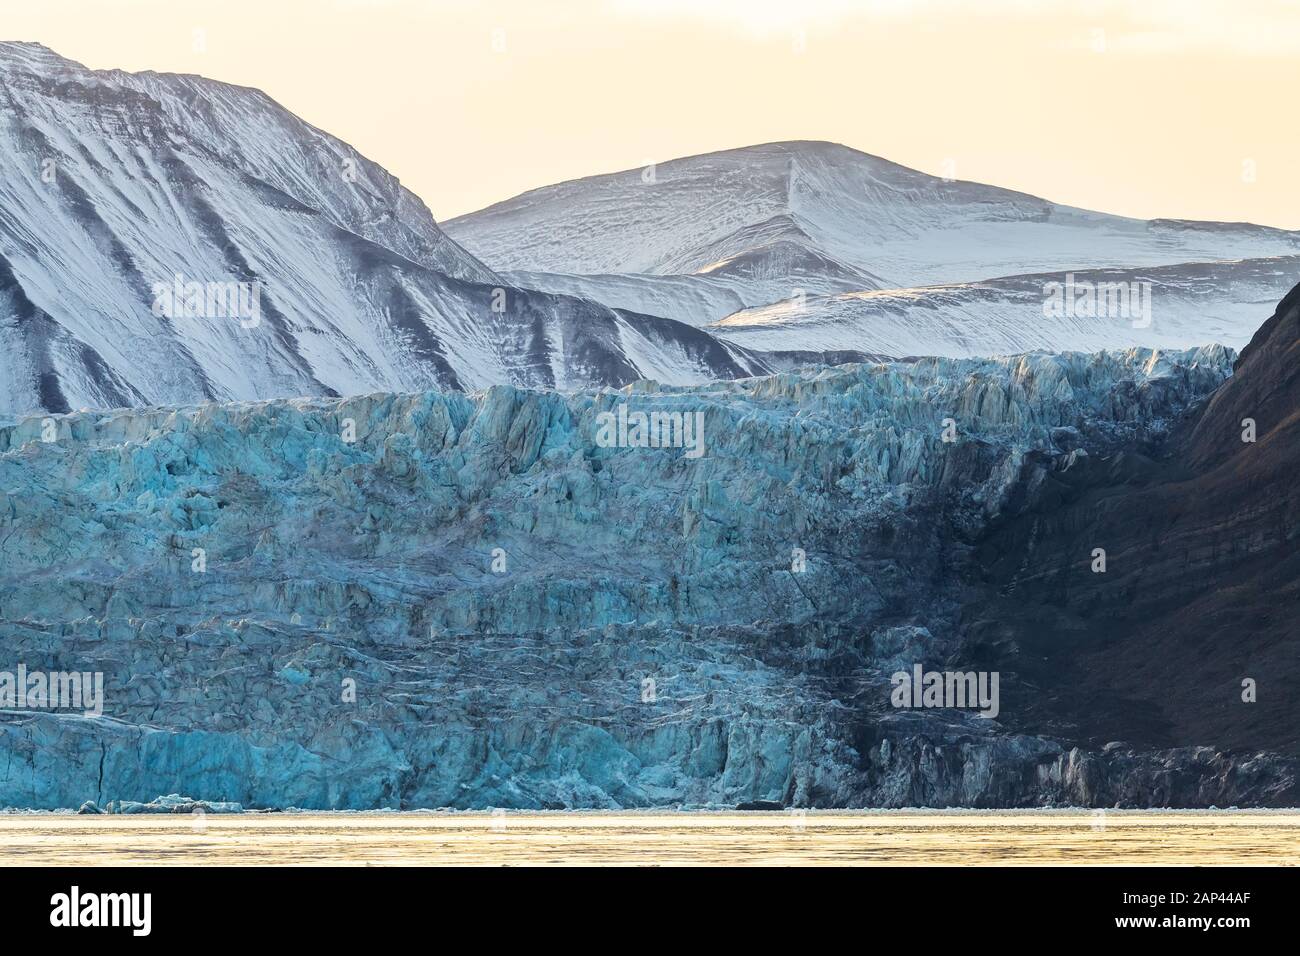 Großer blauer Gletscher vor dem gefrorenen Gebirge - erstaunliche arktische Landschaft Stockfoto